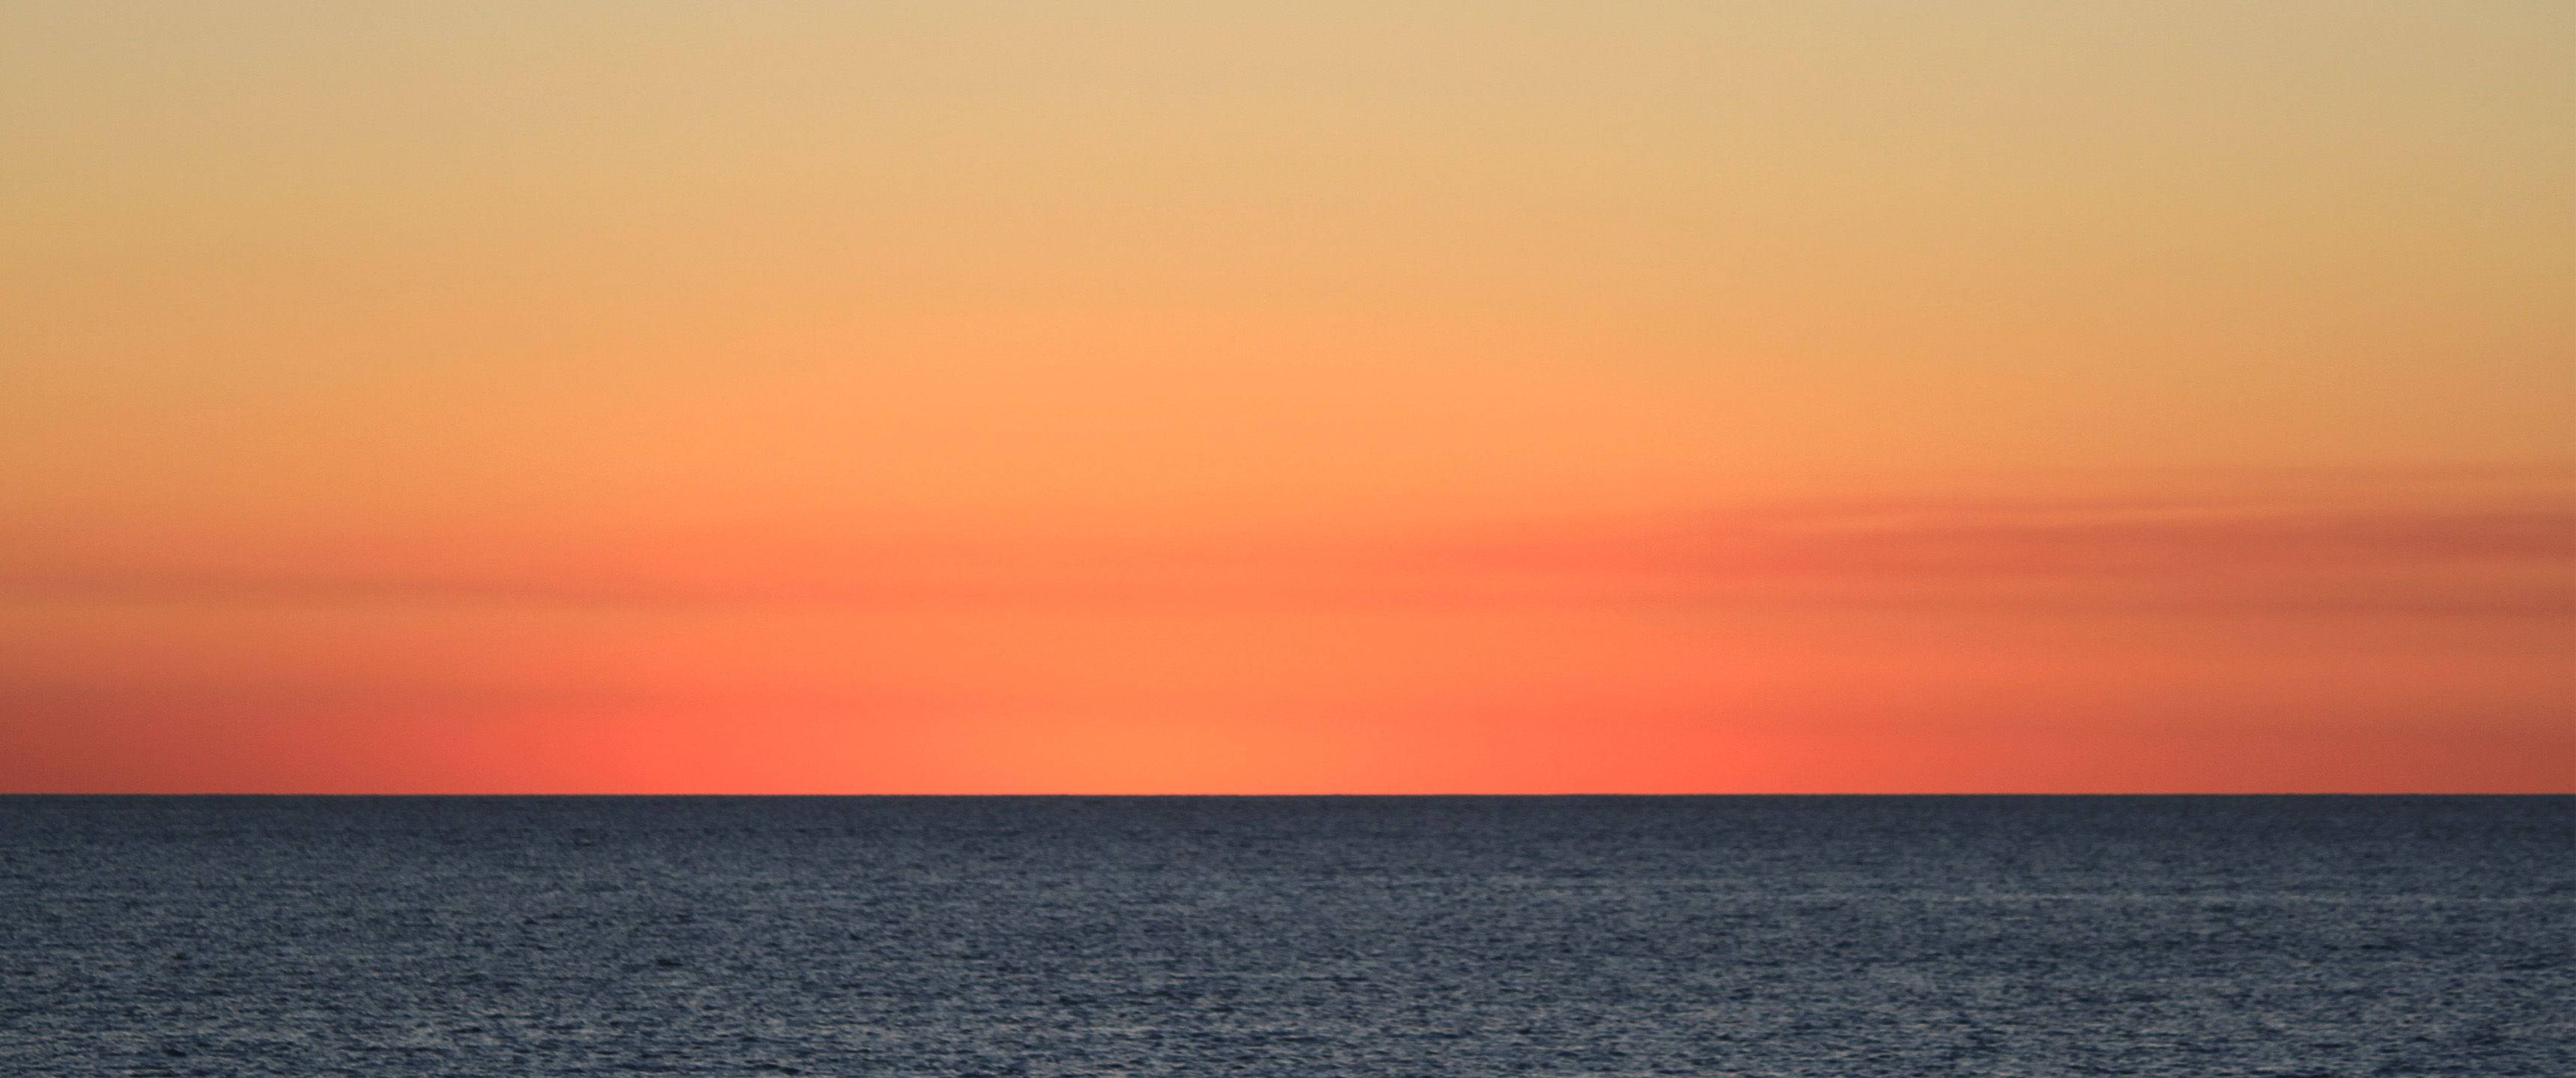 Download 3440x1440 Minimalist Orange Sea Skies Wallpaper